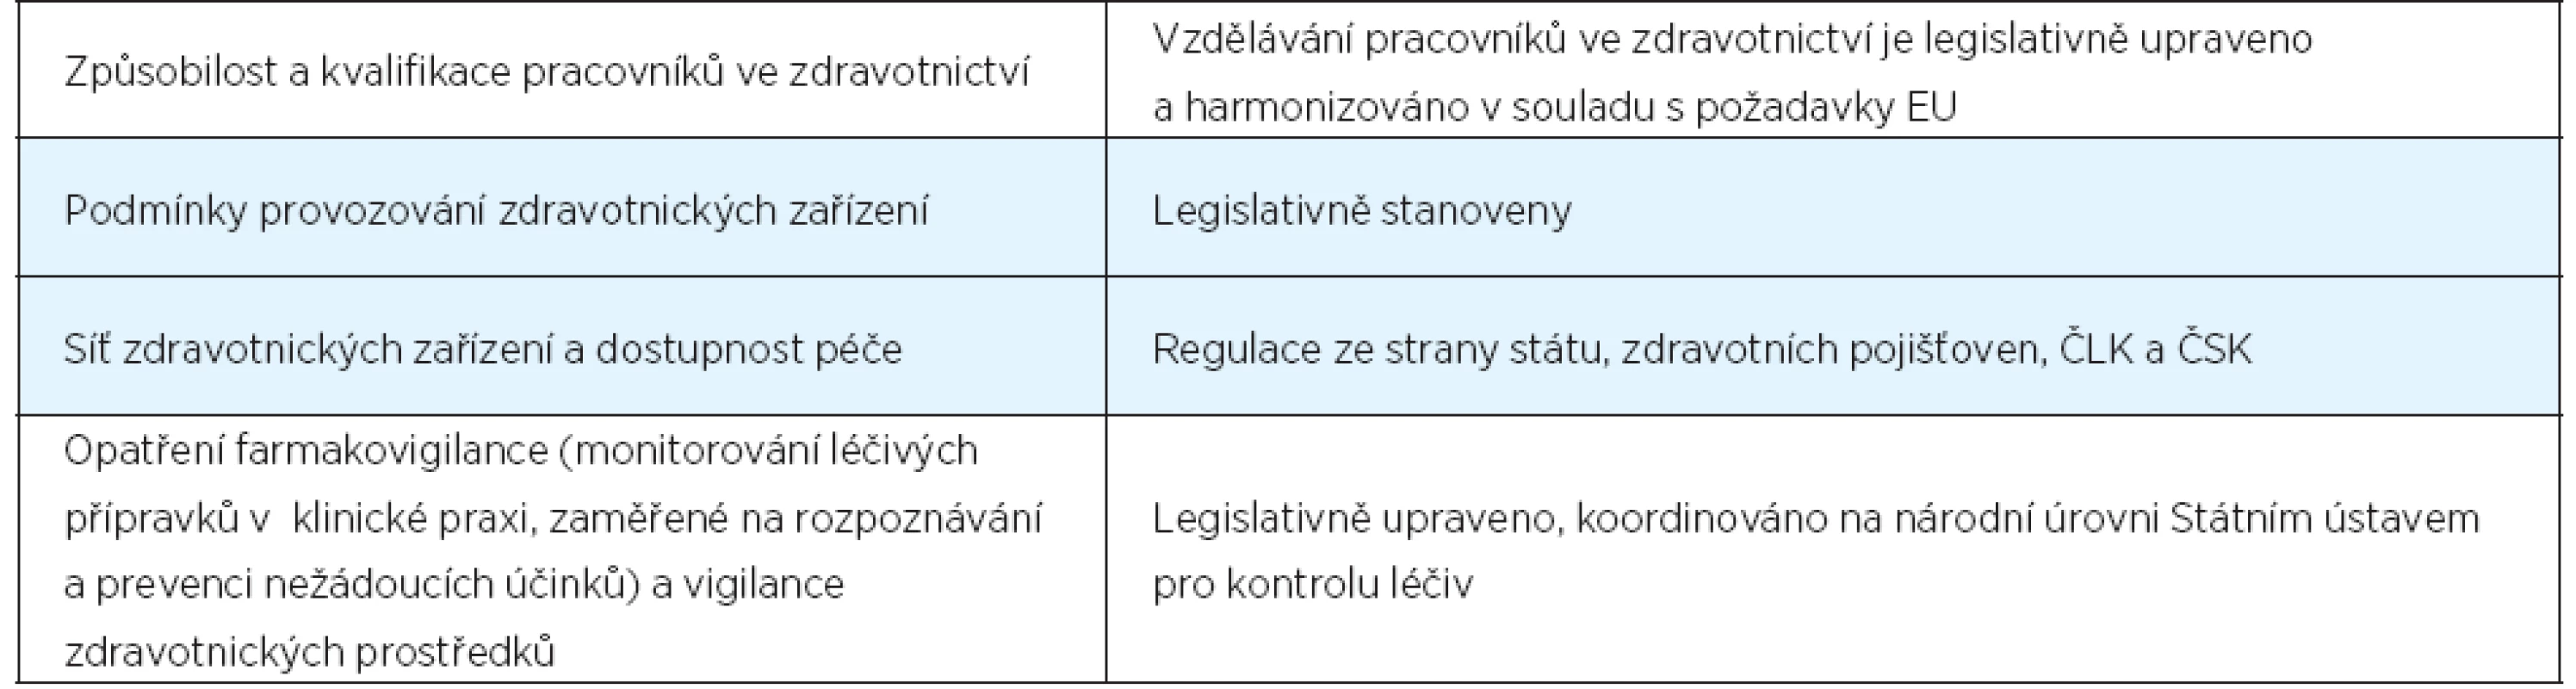 Přehled zavedených regulačních opatření ke zvyšování kvality zdravotní péče v ČR